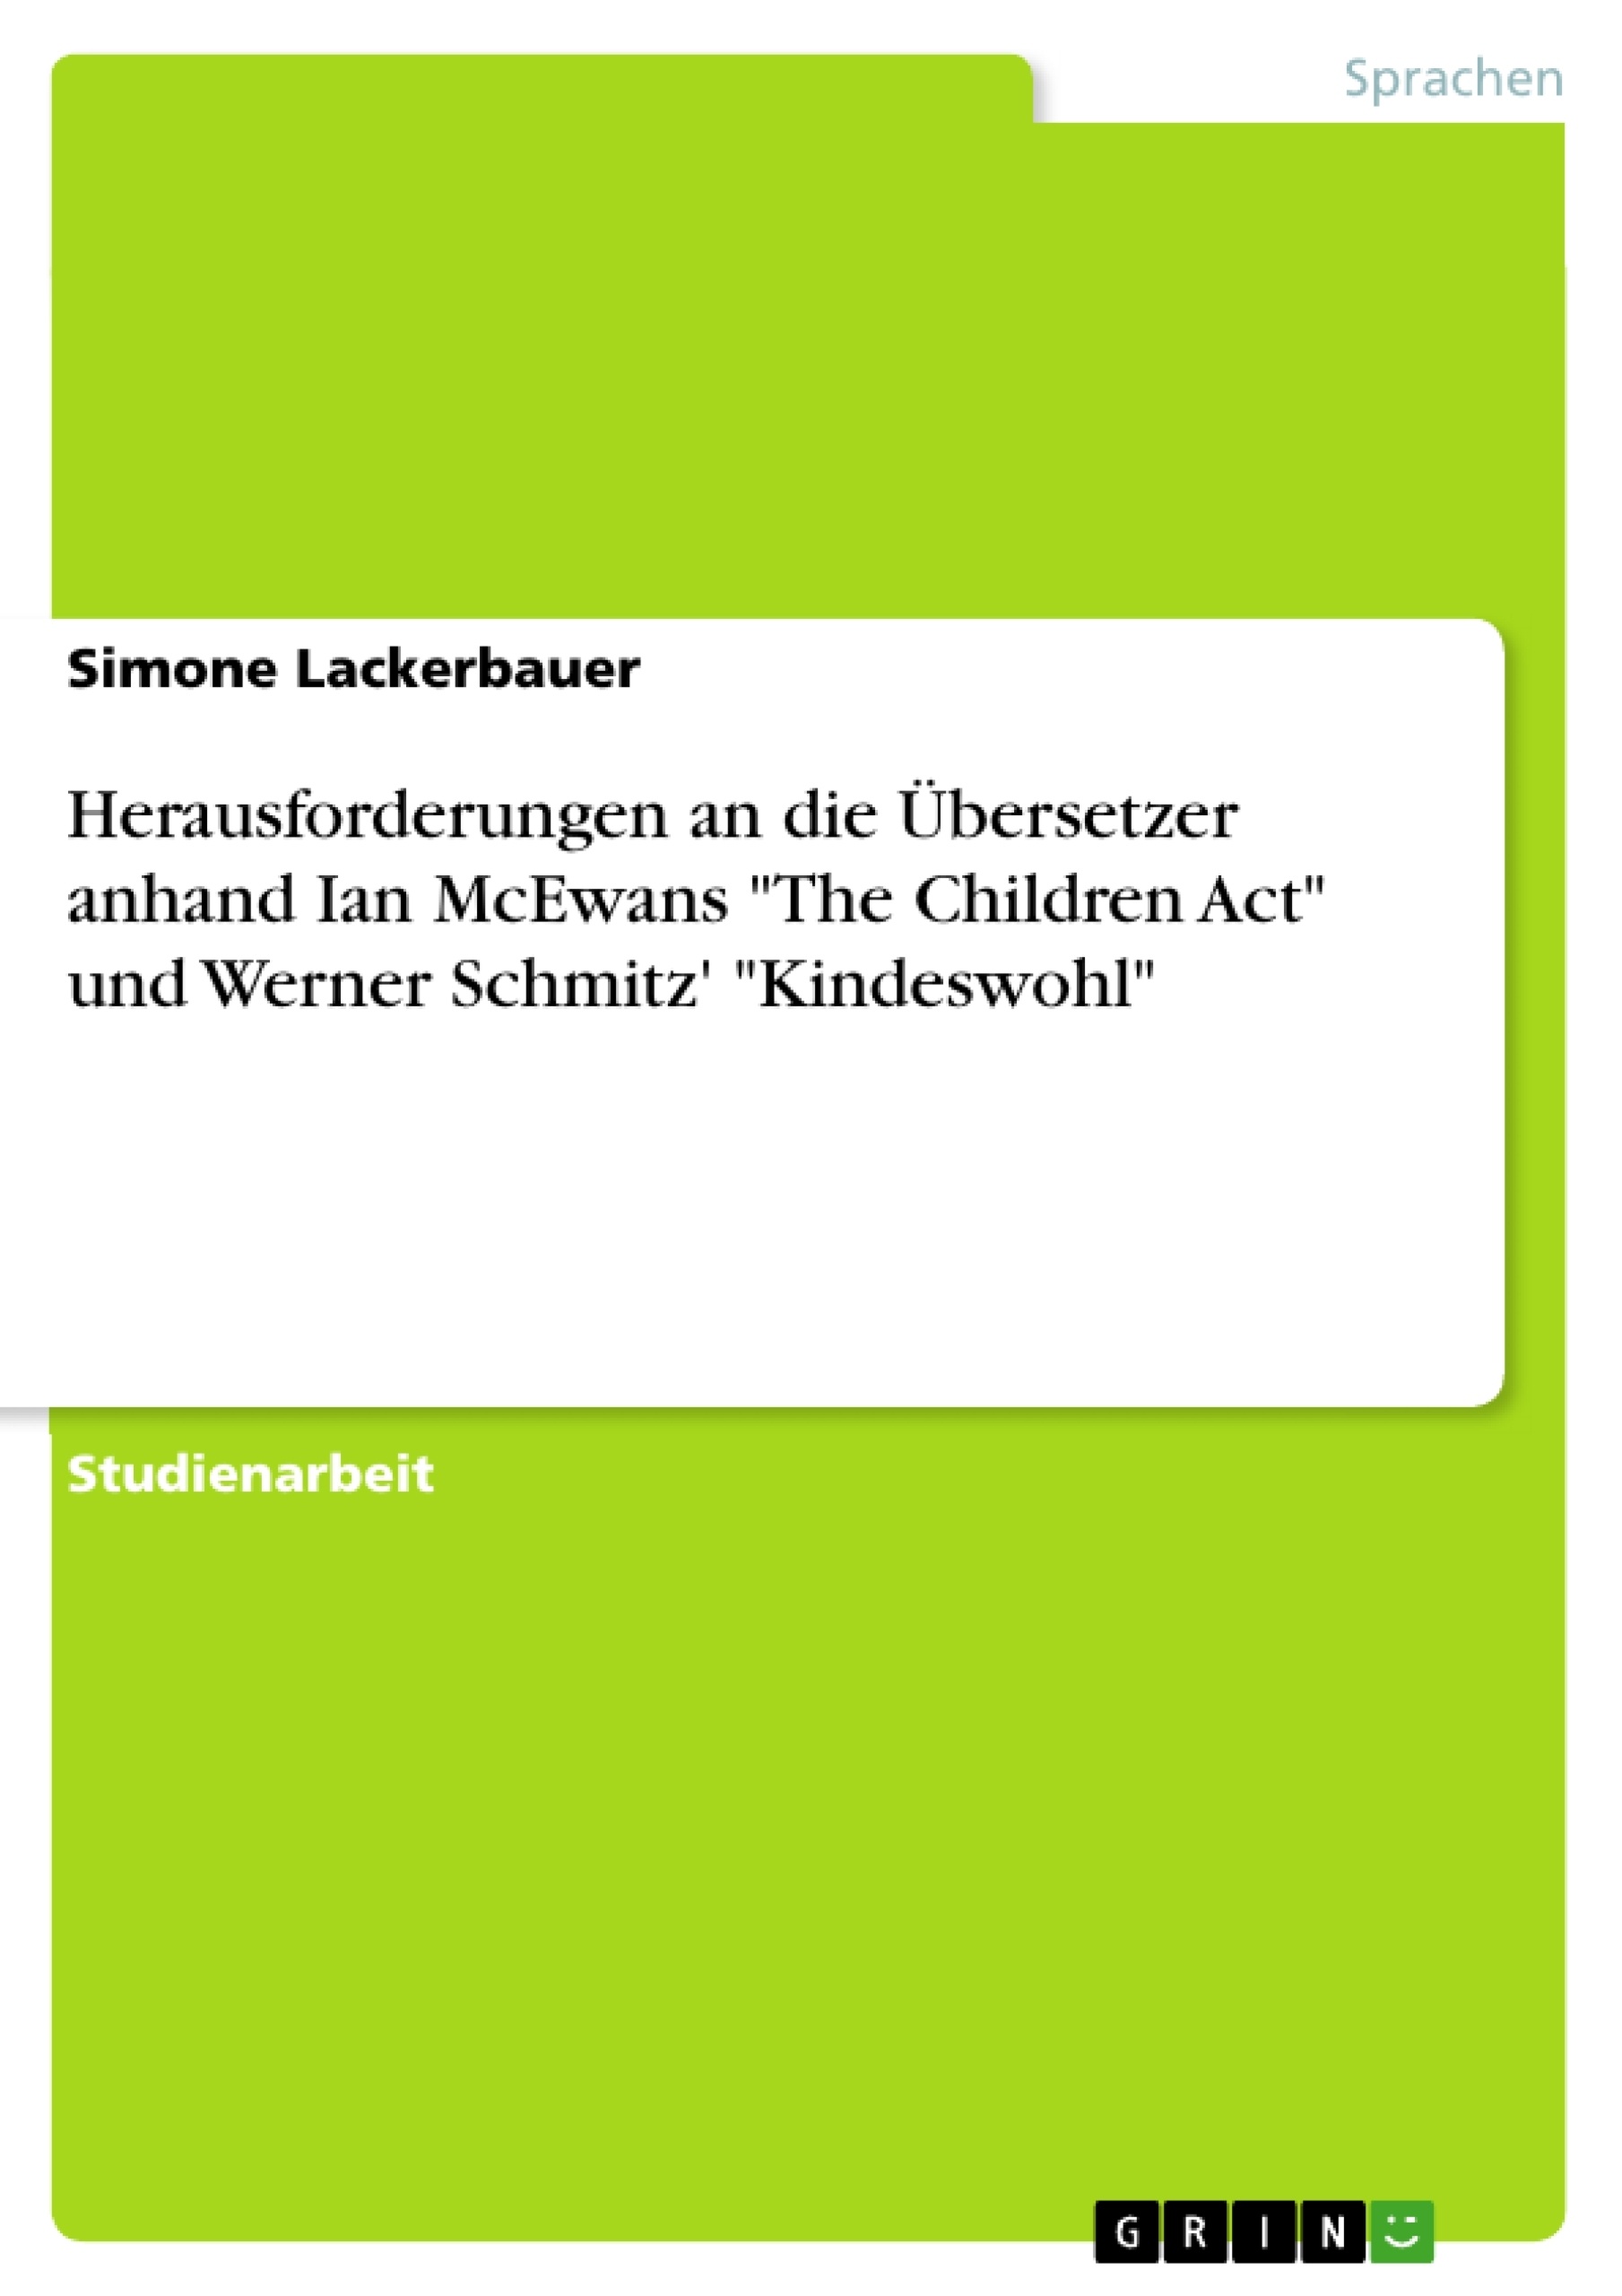 Title: Herausforderungen an die Übersetzer anhand Ian McEwans "The Children Act" und Werner Schmitz' "Kindeswohl"